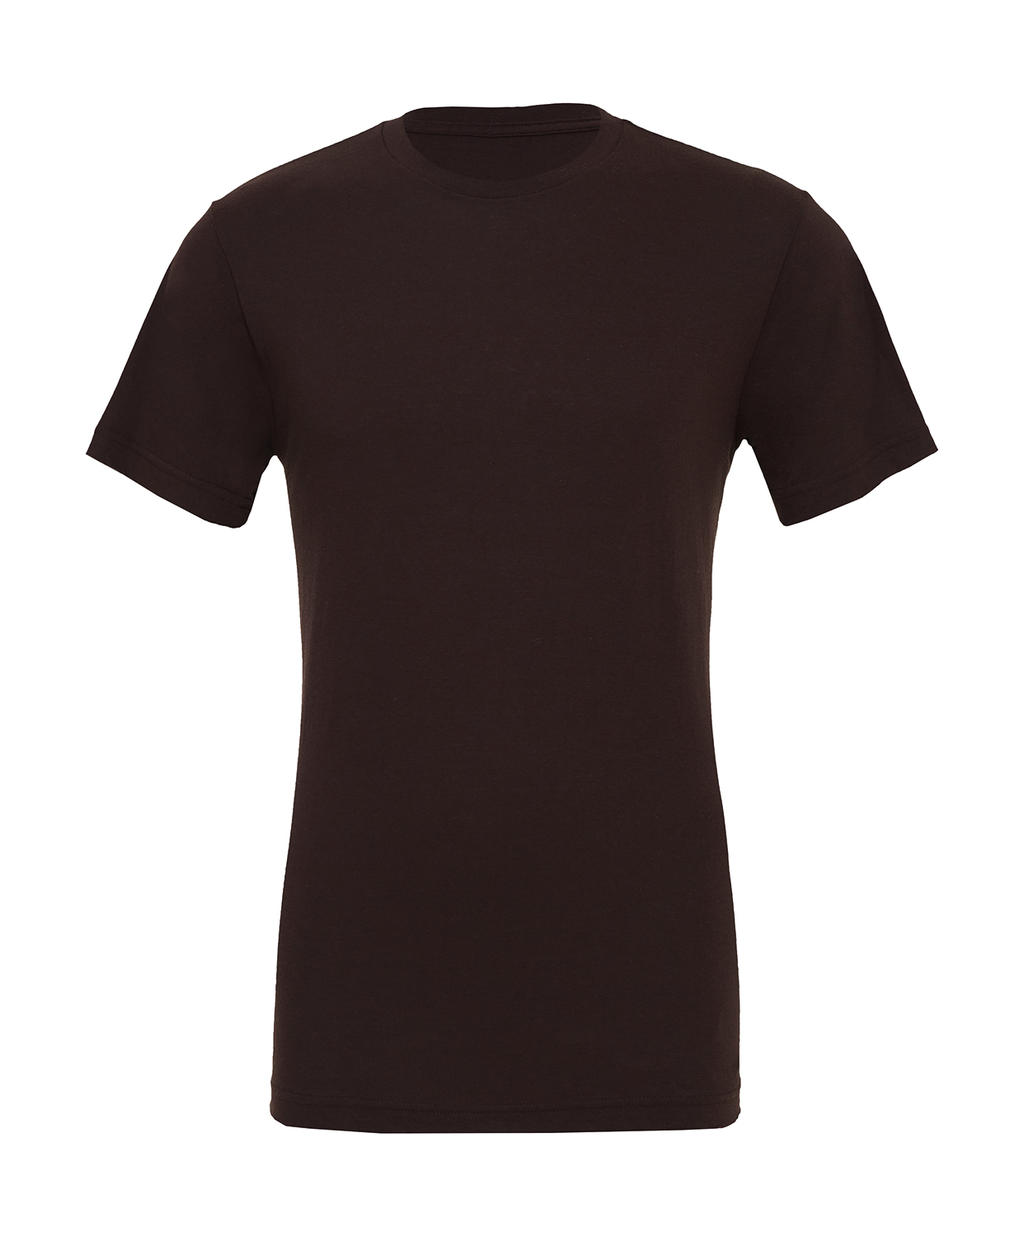 Tričko Unisex Jersey - brown